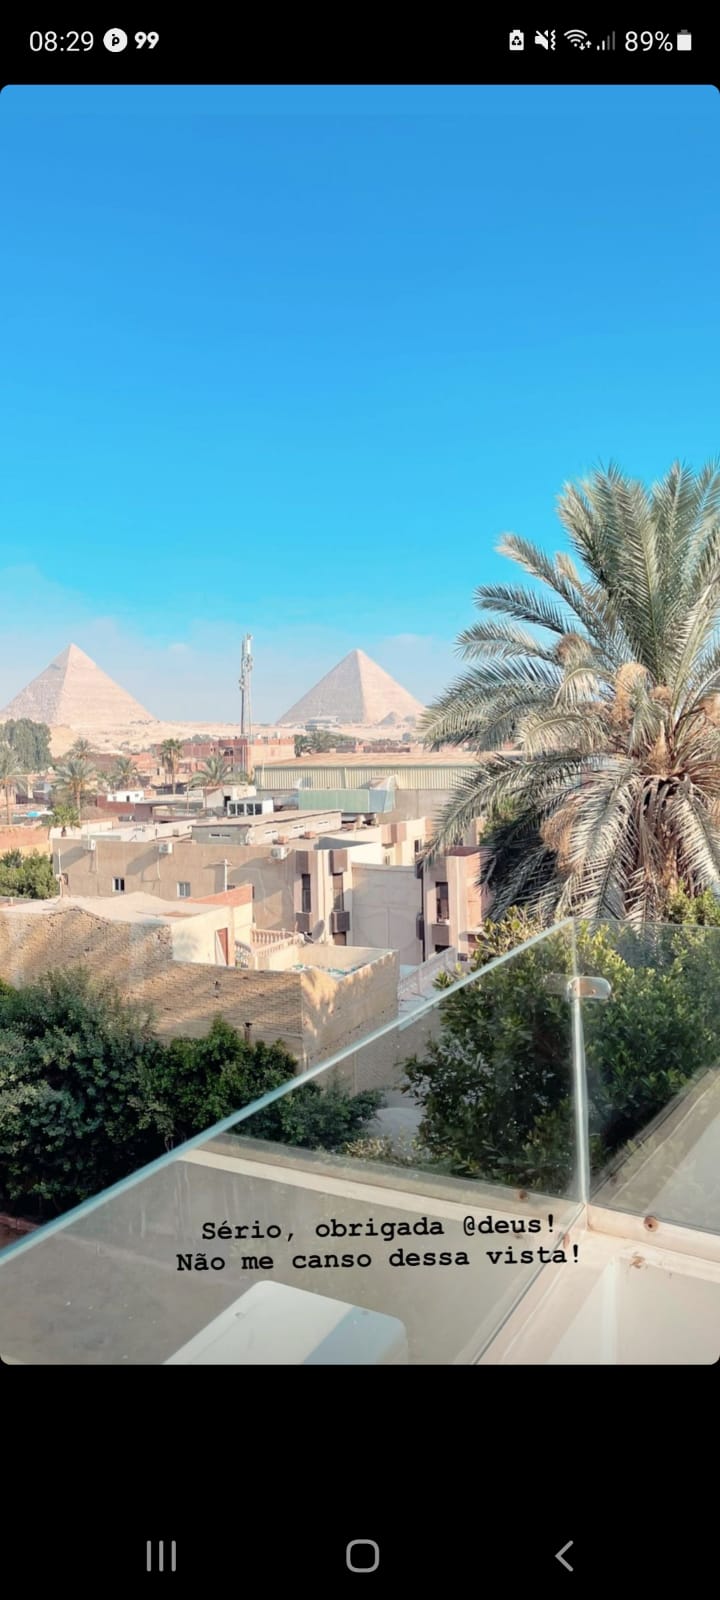 Carla Diaz posta clique de sua viagem ao Egito: 'energia surreal' (Foto: Reprodução/Instagram)